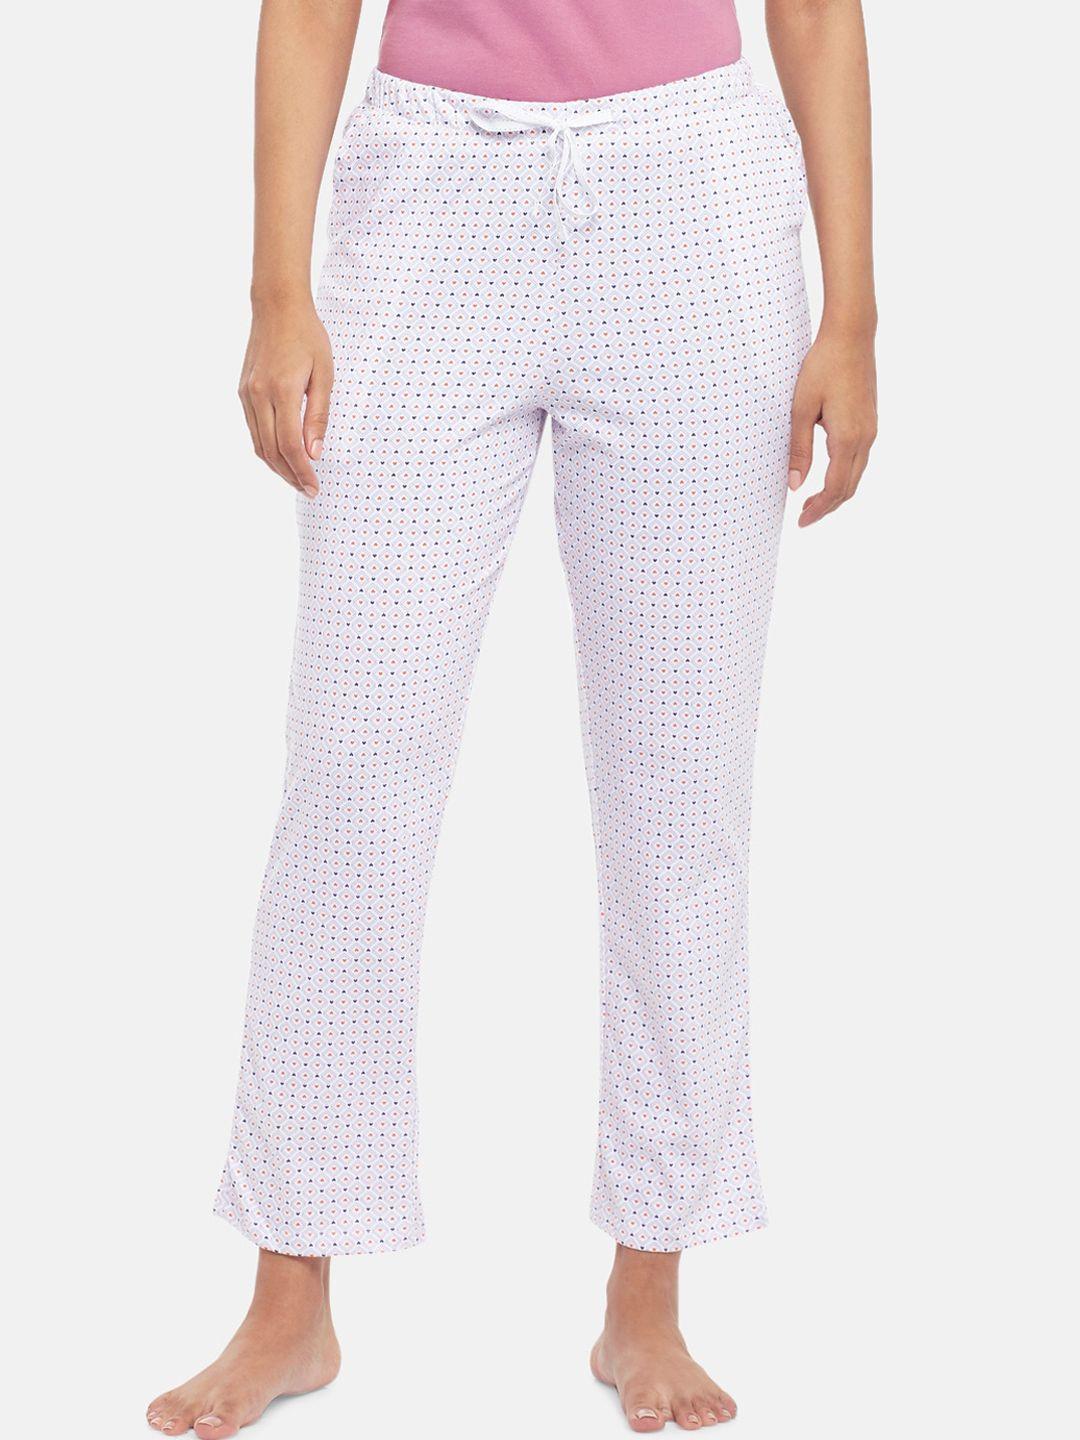 dreamz by pantaloons women white printed lounge pant